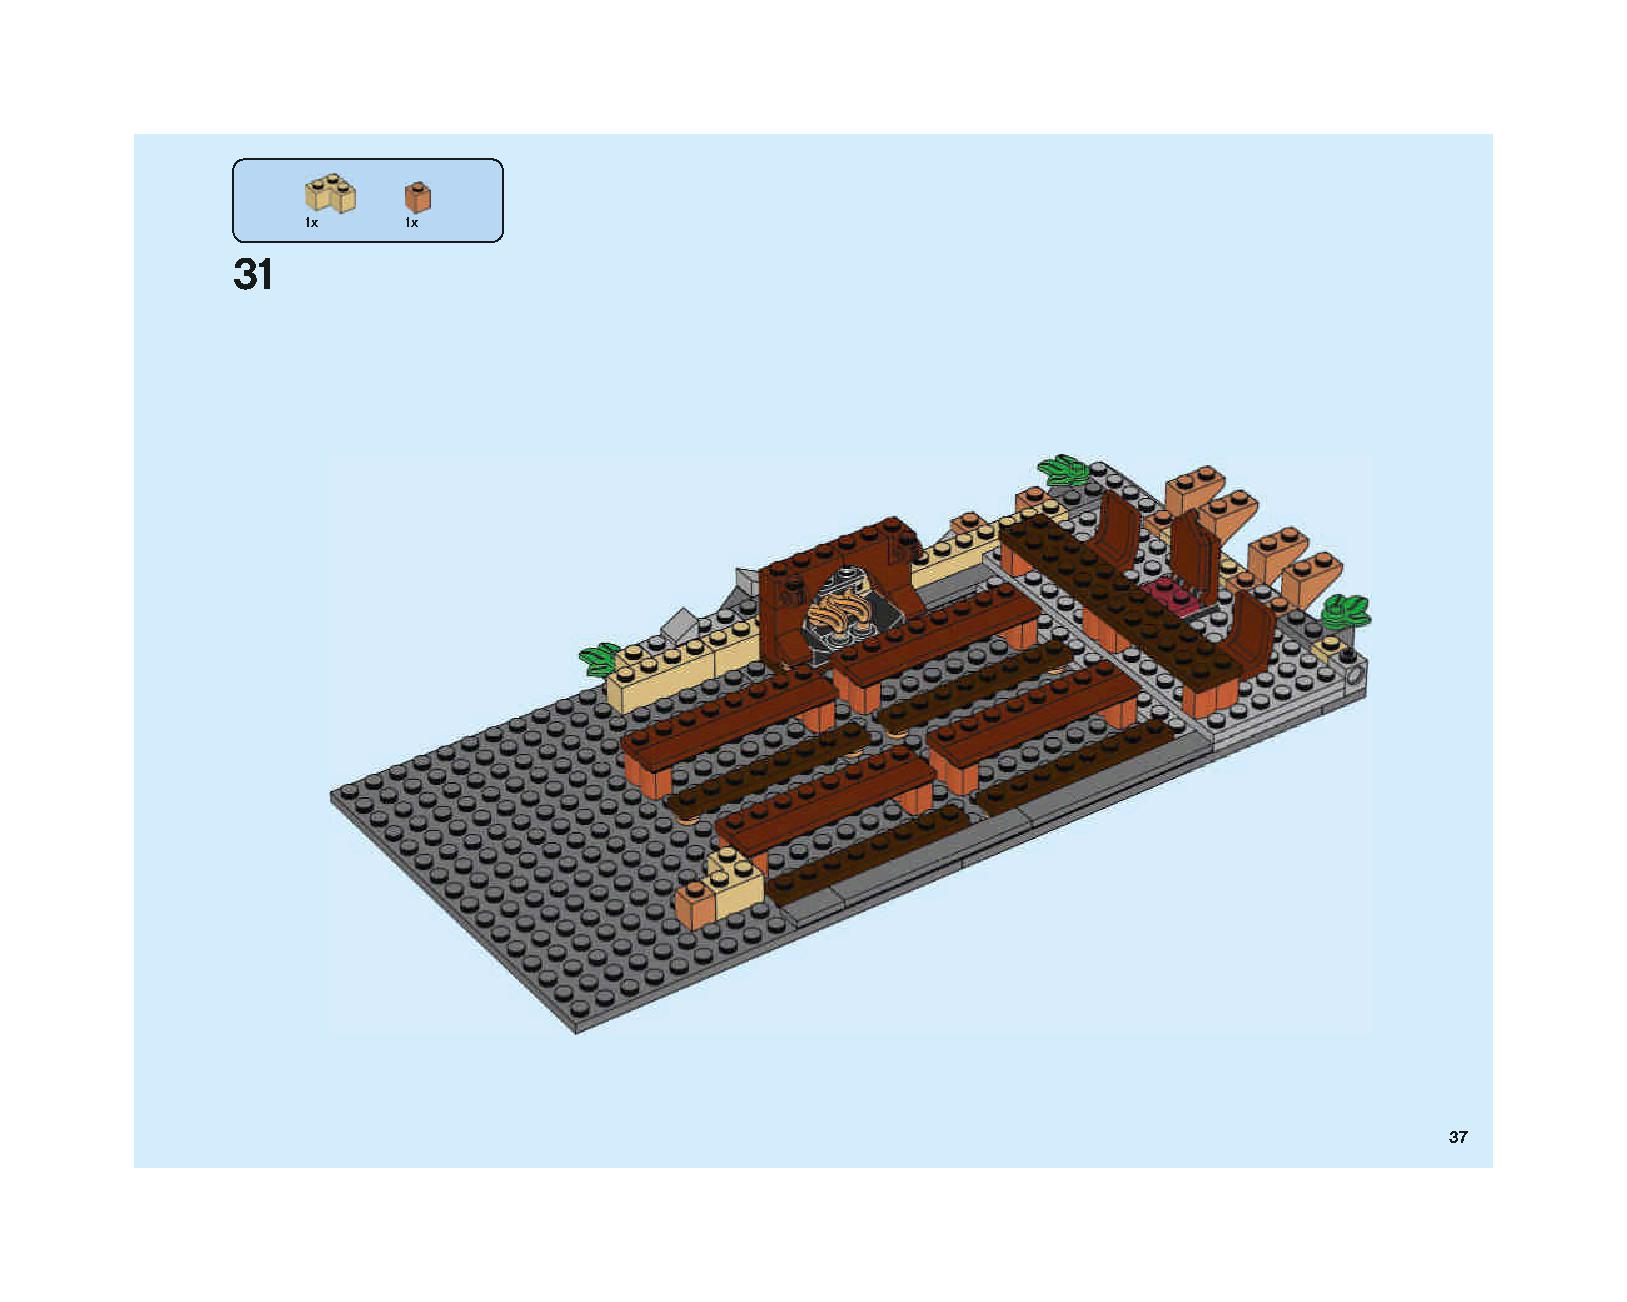 ホグワーツの大広間 75954 レゴの商品情報 レゴの説明書・組立方法 37 page